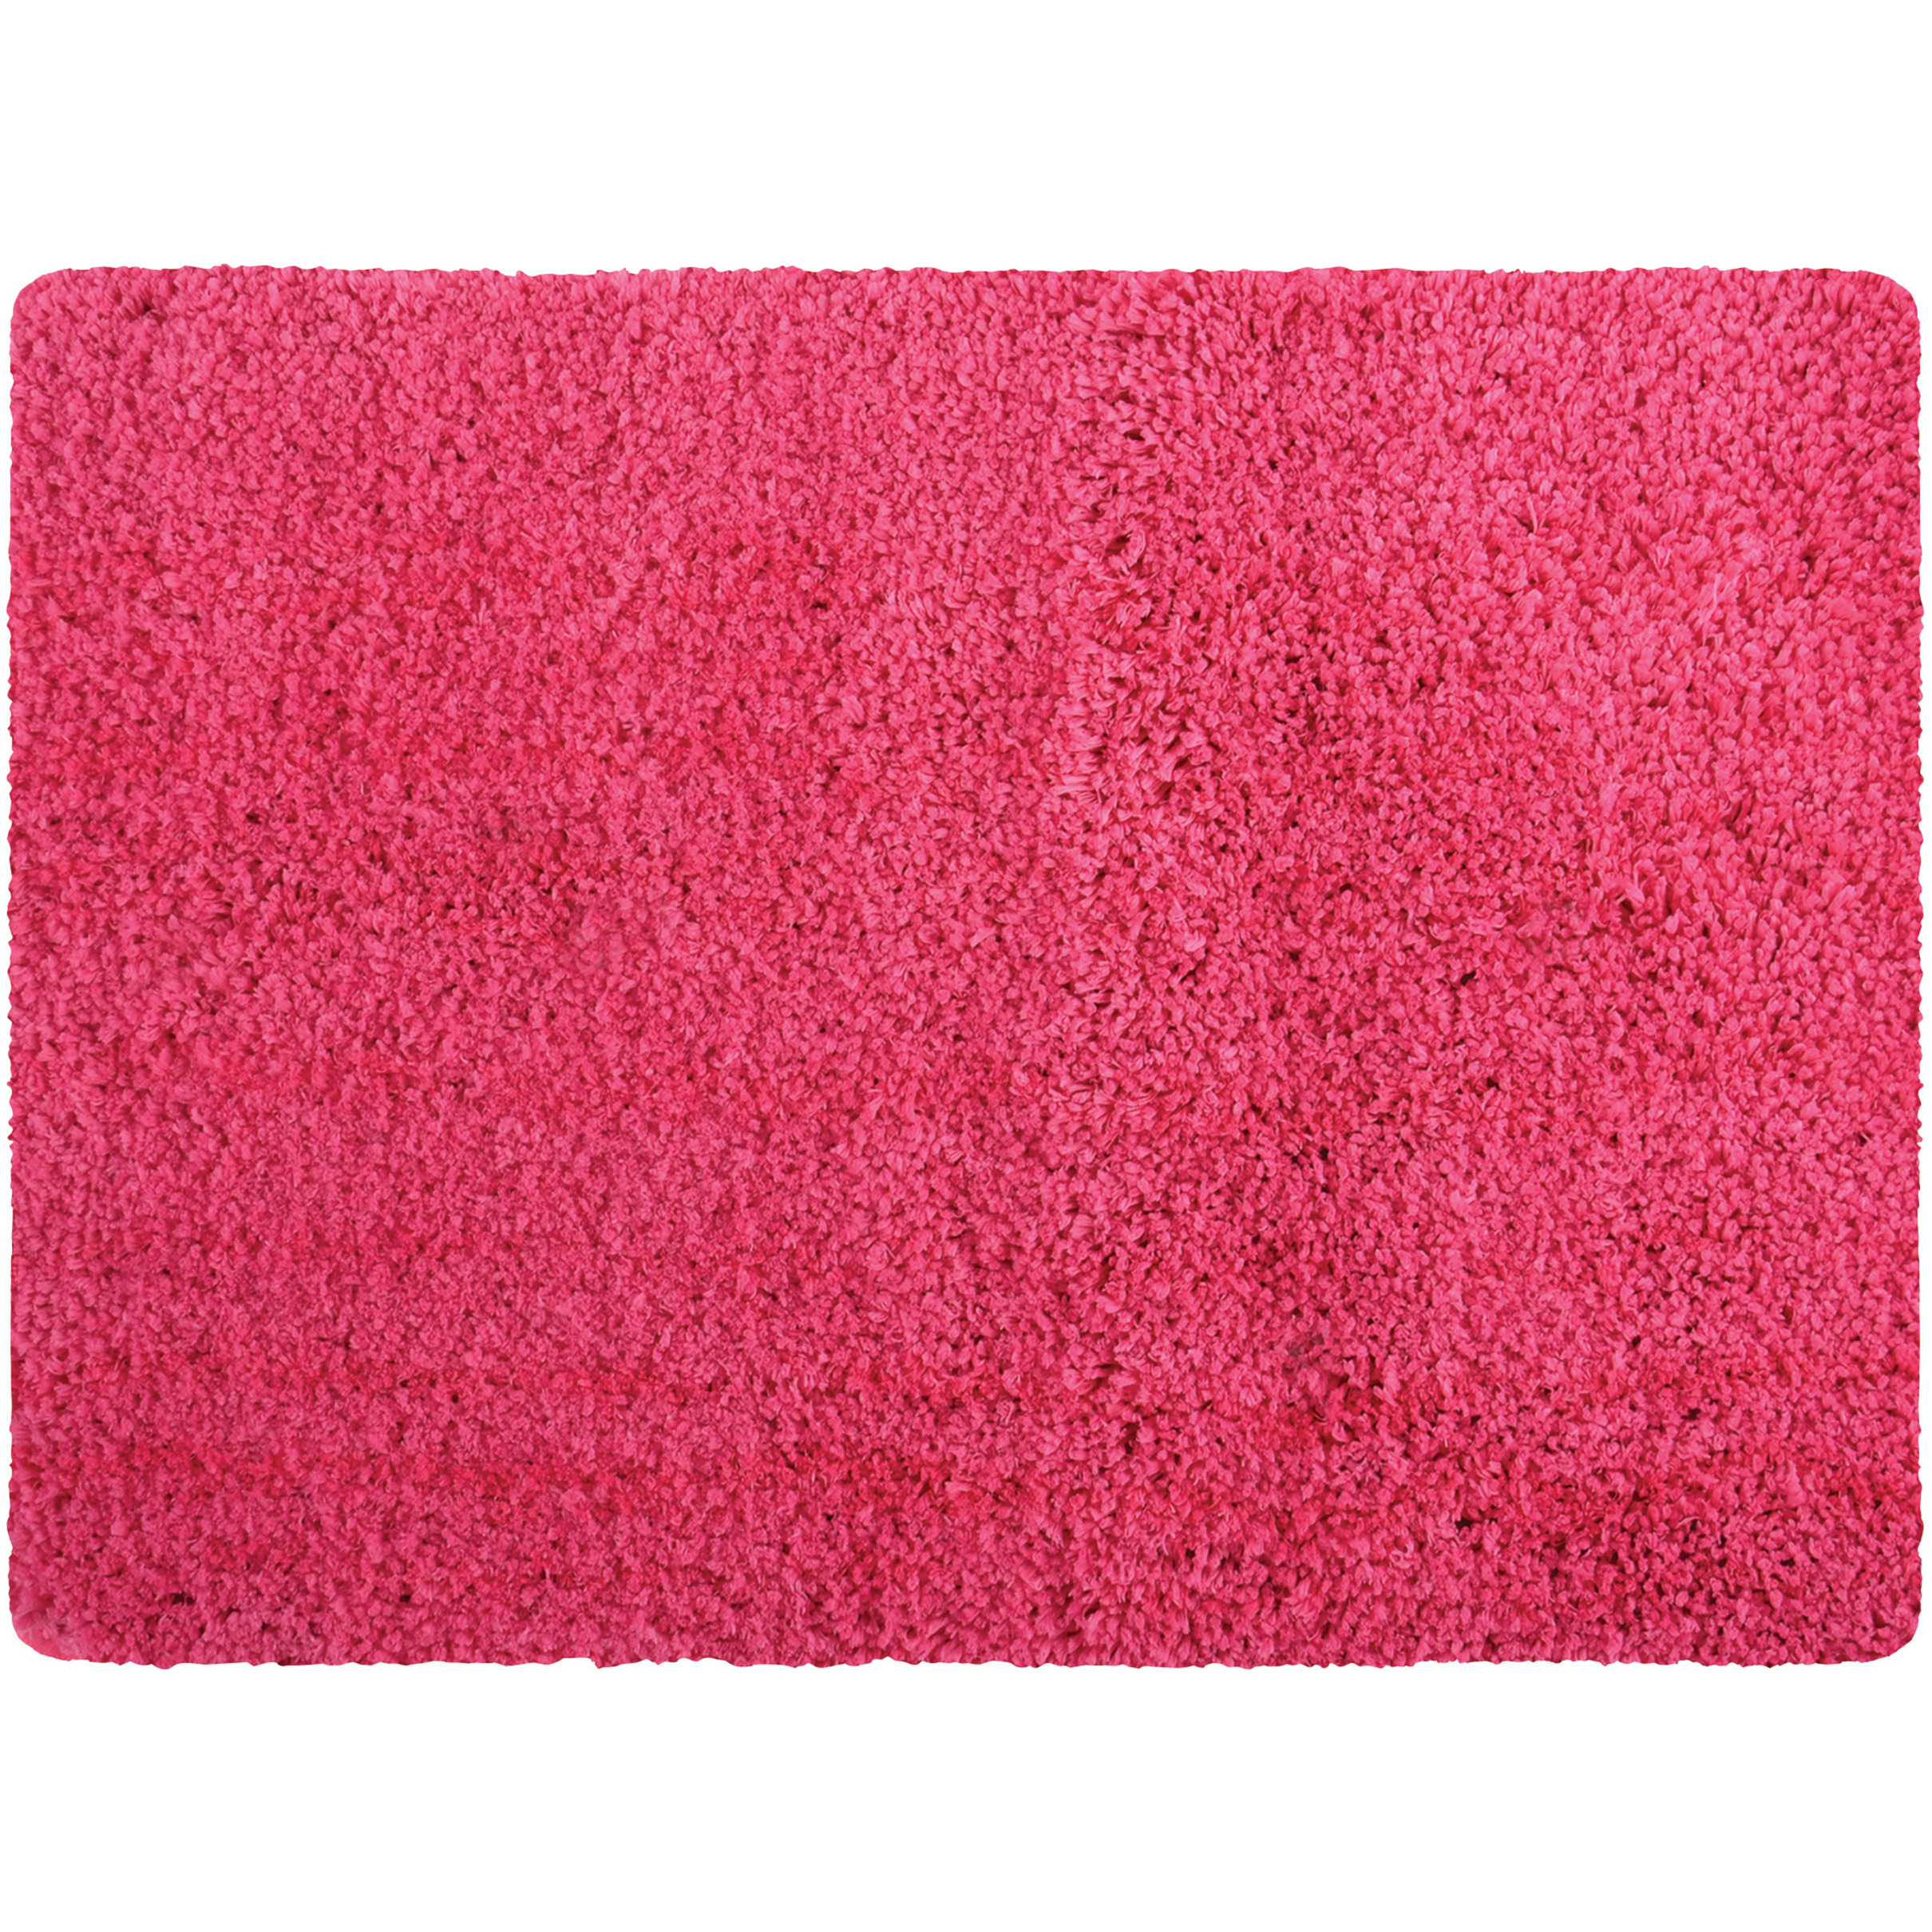 Badkamerkleedje-badmat tapijt voor op de vloer fuchsia roze 50 x 70 cm langharig